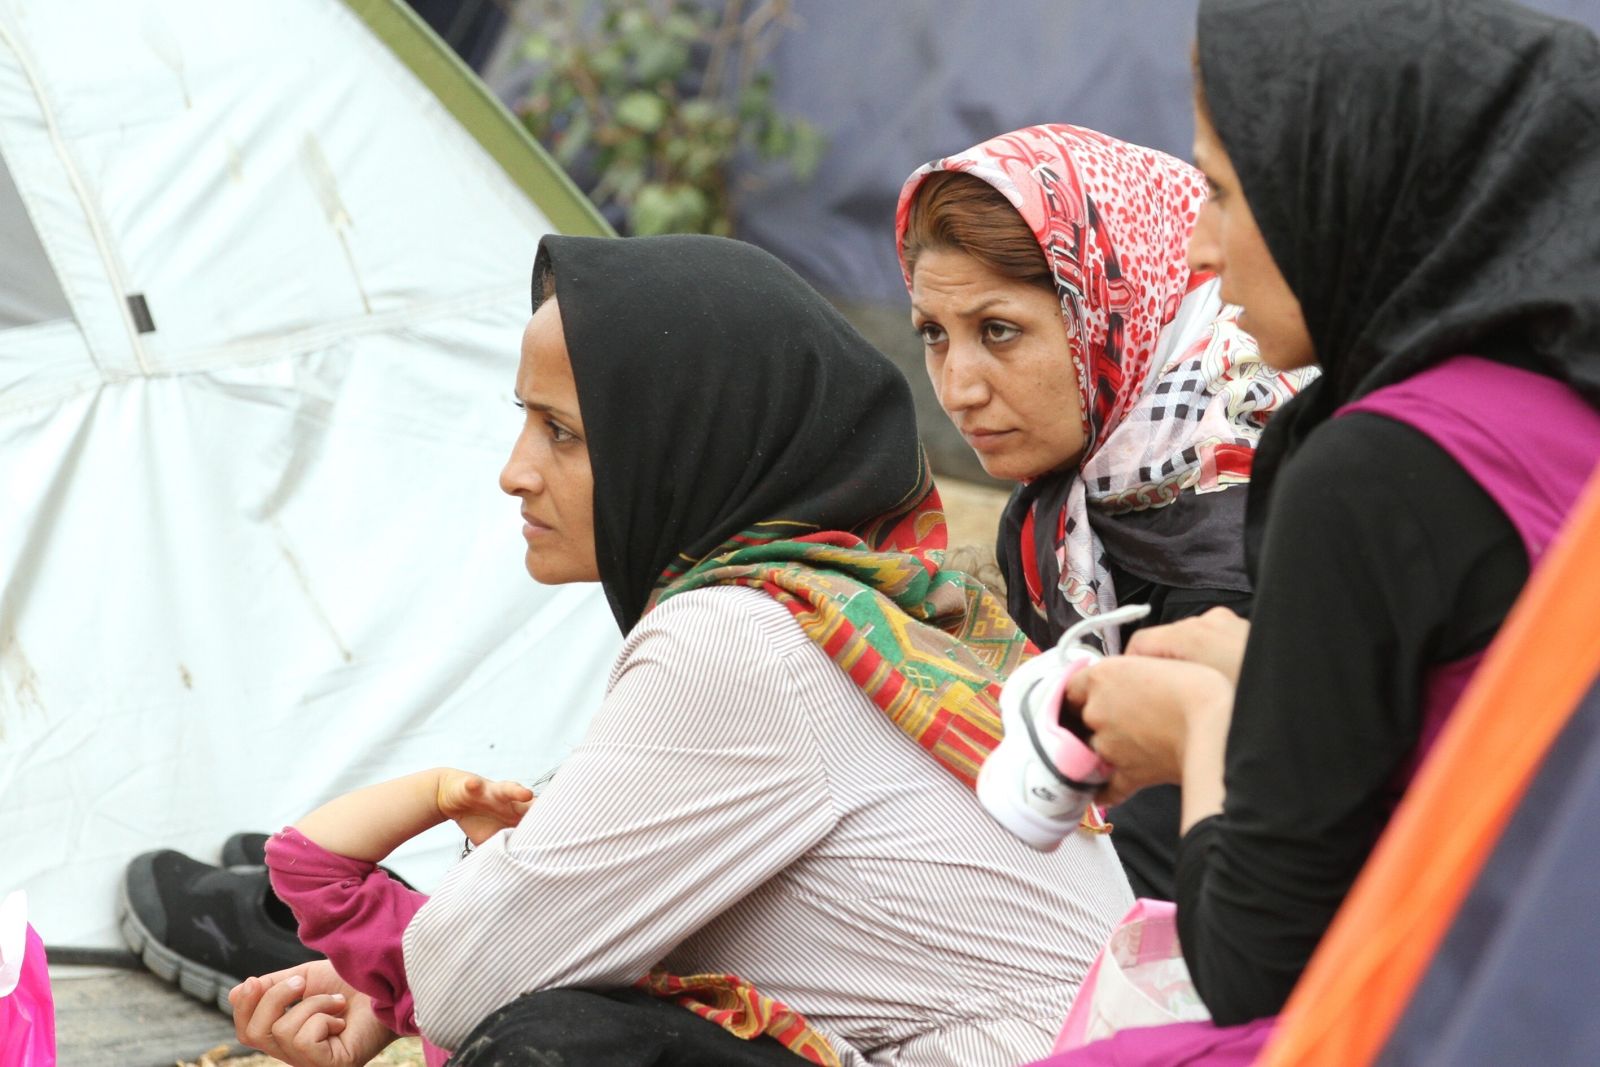 Afghanische Frauen im illegalen Flüchtlingscamp im Pedion tou Areos, Athens größtem Park.